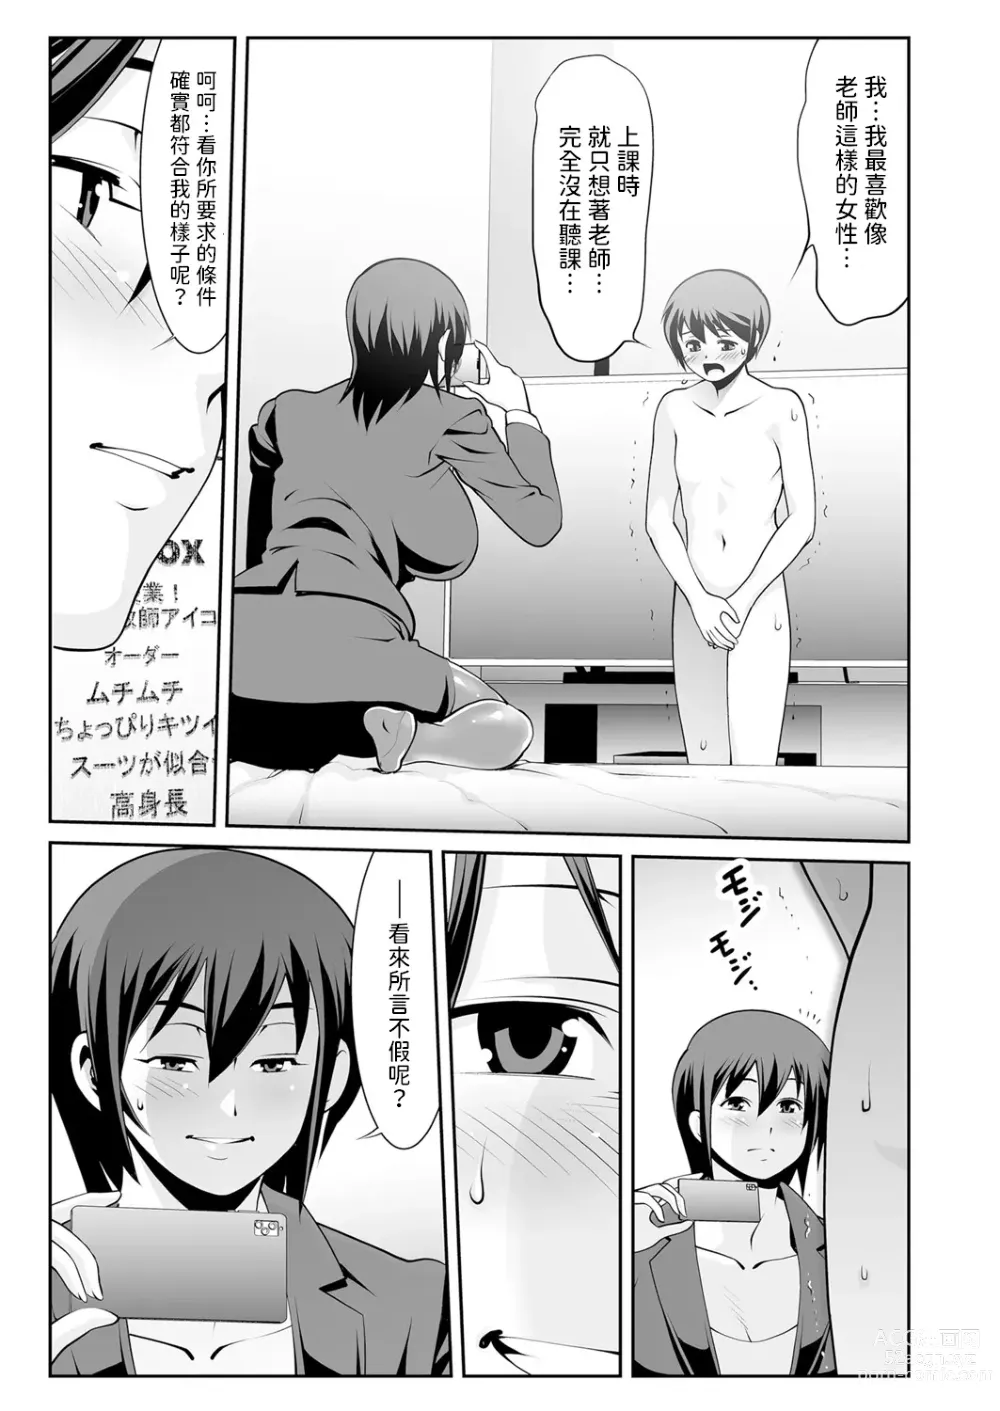 Page 5 of manga Sensei no Hiru to Yoru